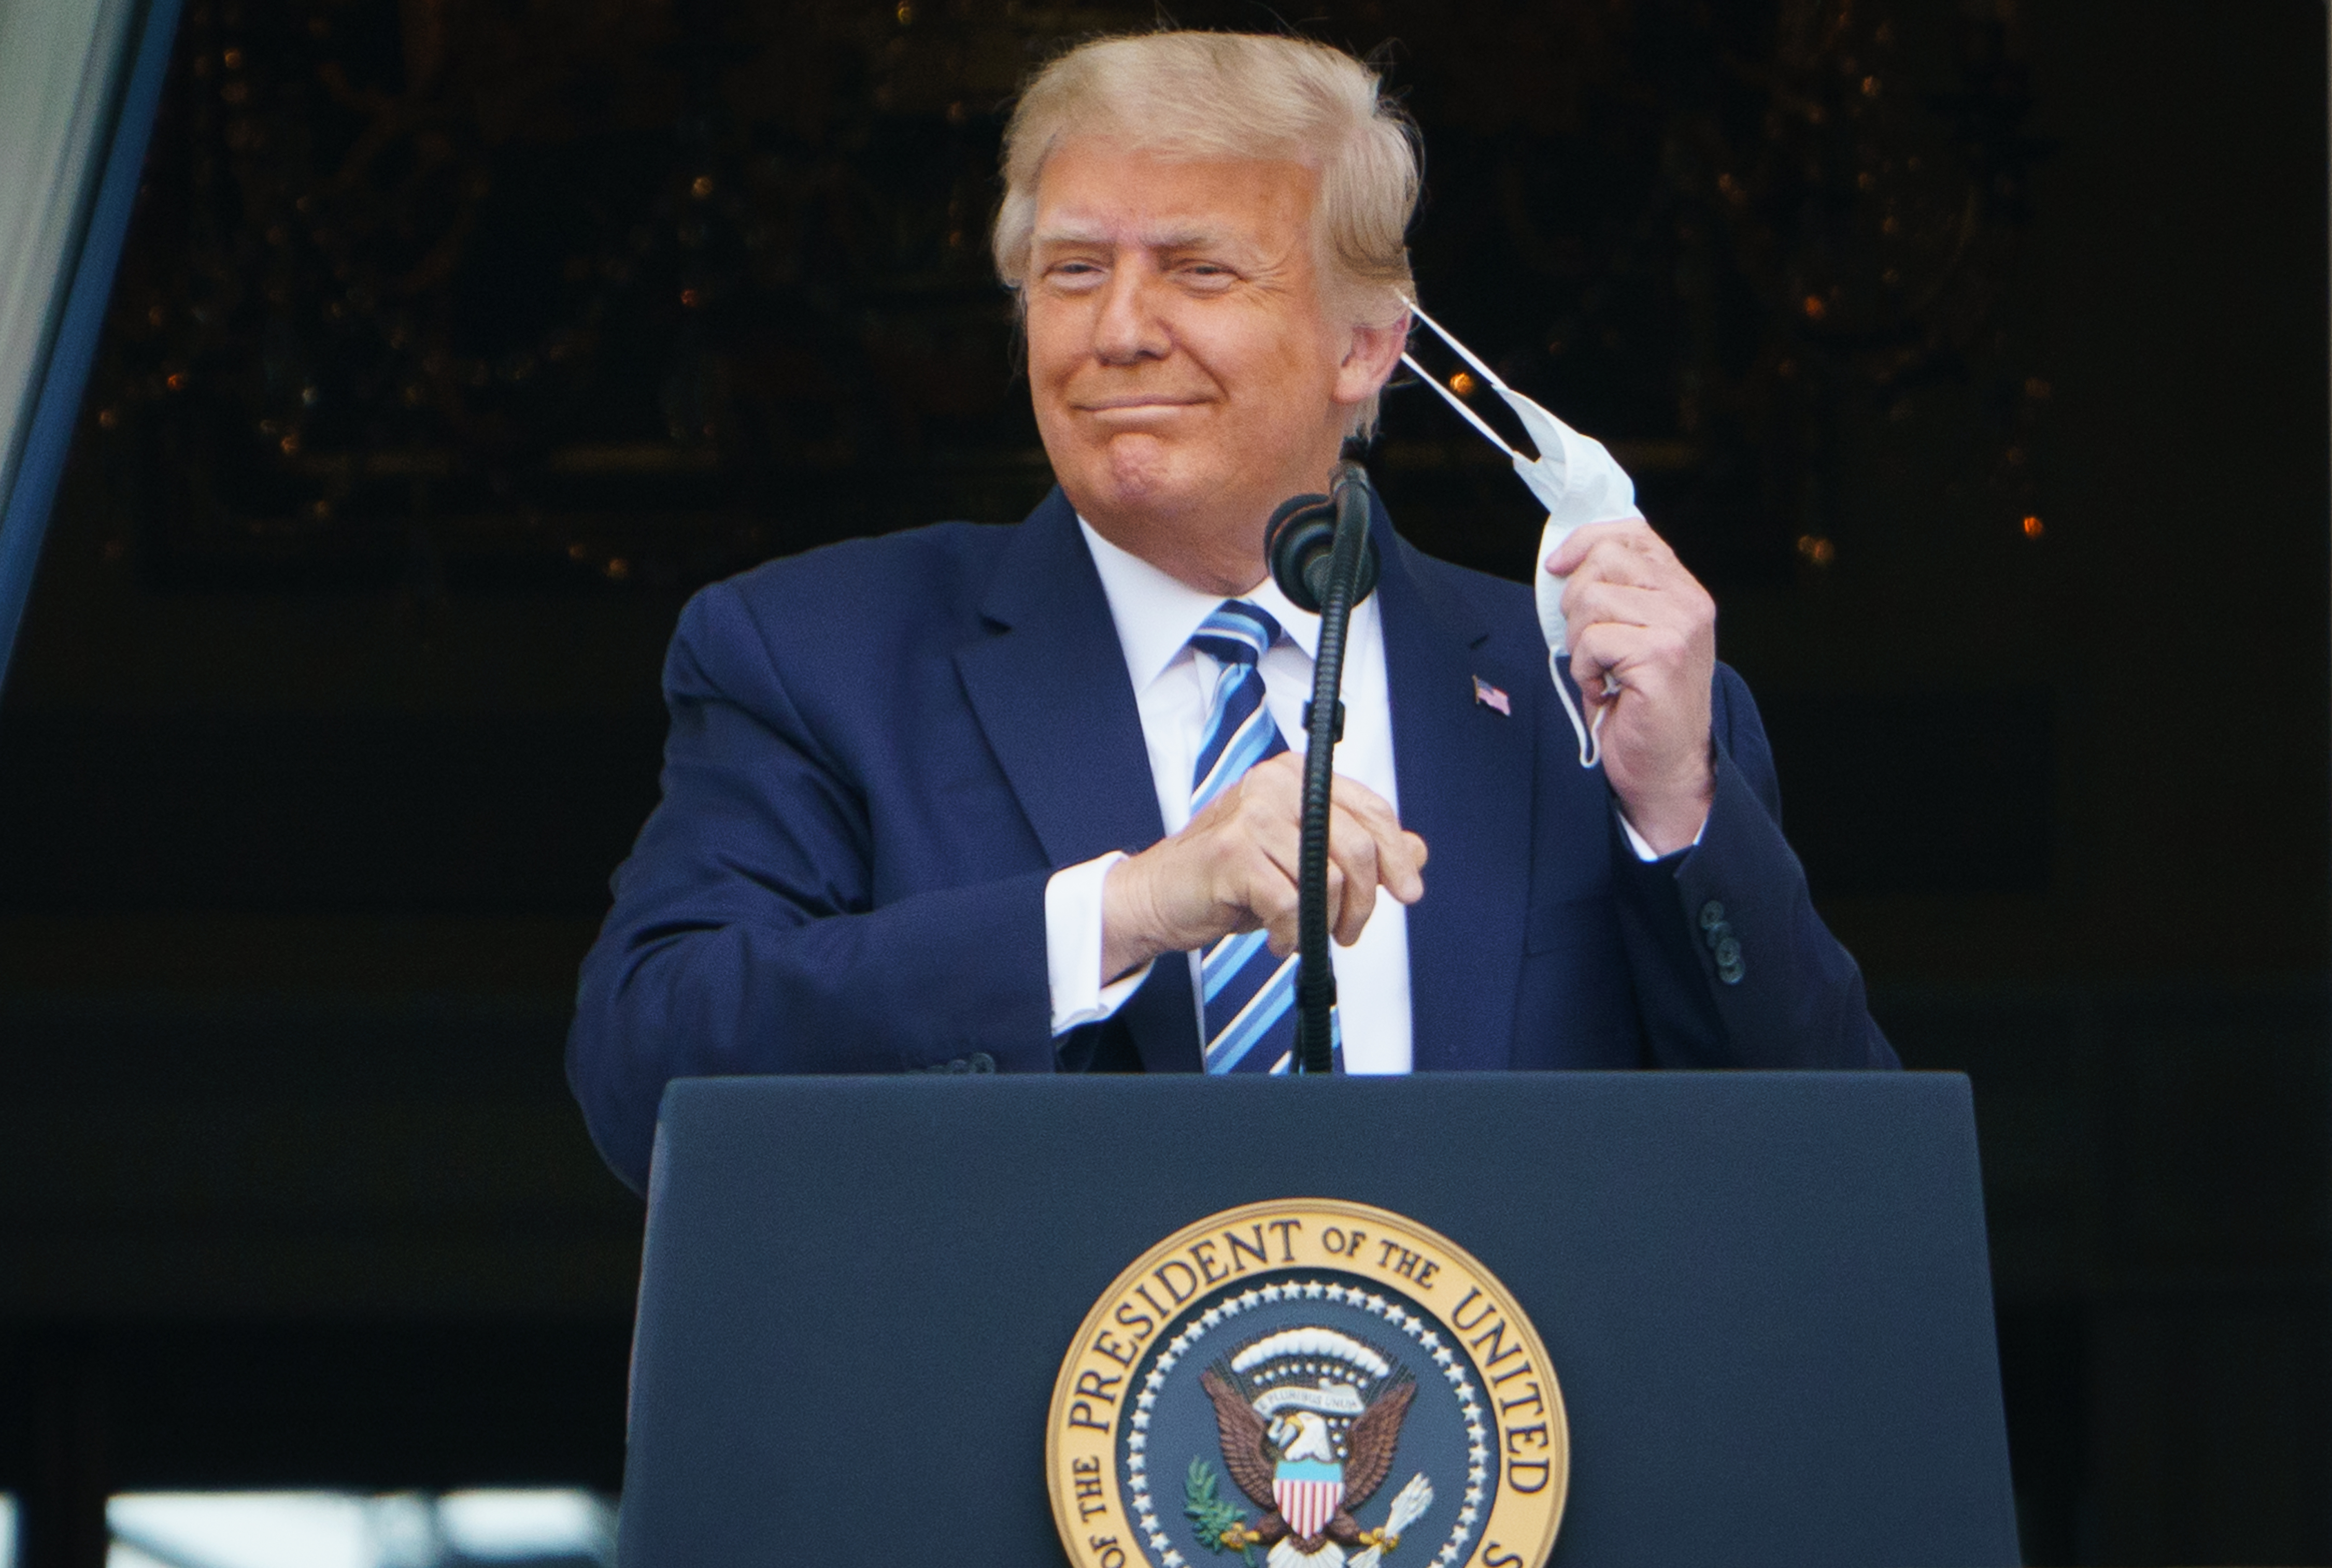 El presidente Donald Trump se quita la mascarilla antes de hablar en un evento público celebrado este sábado 10 de octubre. (Foto Prensa Libre: AFP)